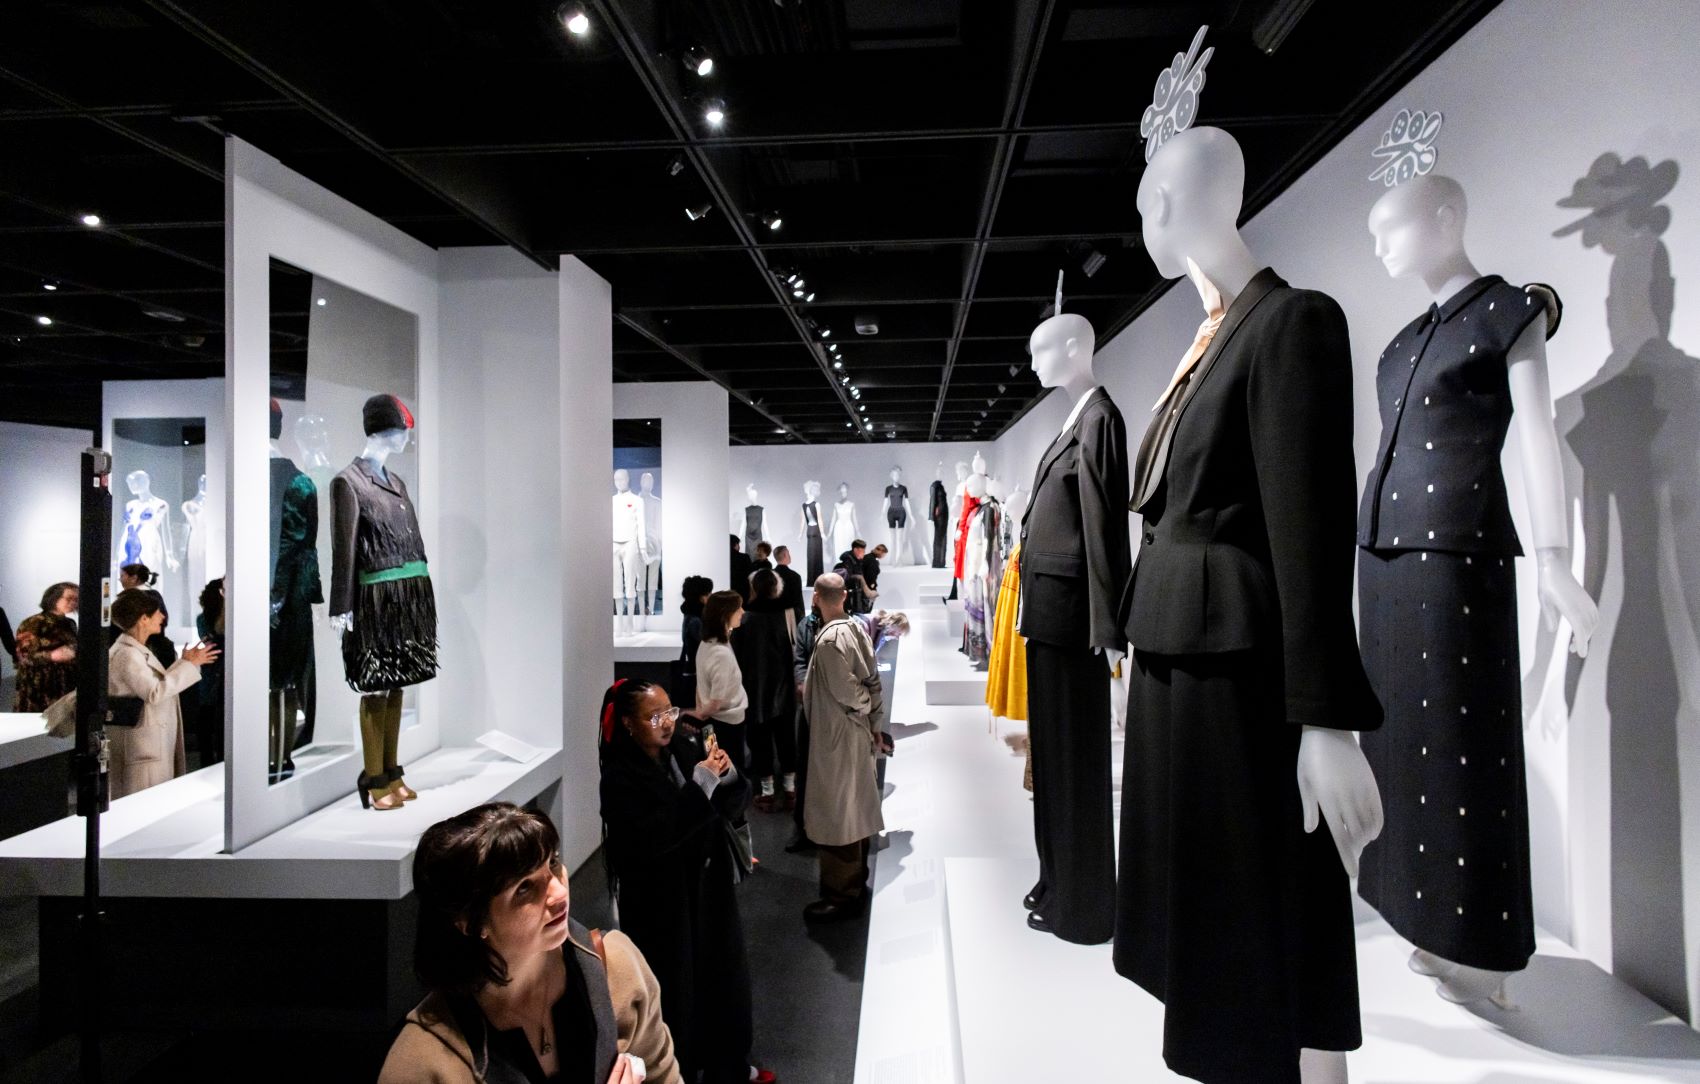 Πρώτη φορά το Μet εκπονεί έρευνα για τις σχεδιάστριες μόδας και τις παρουσιάζει